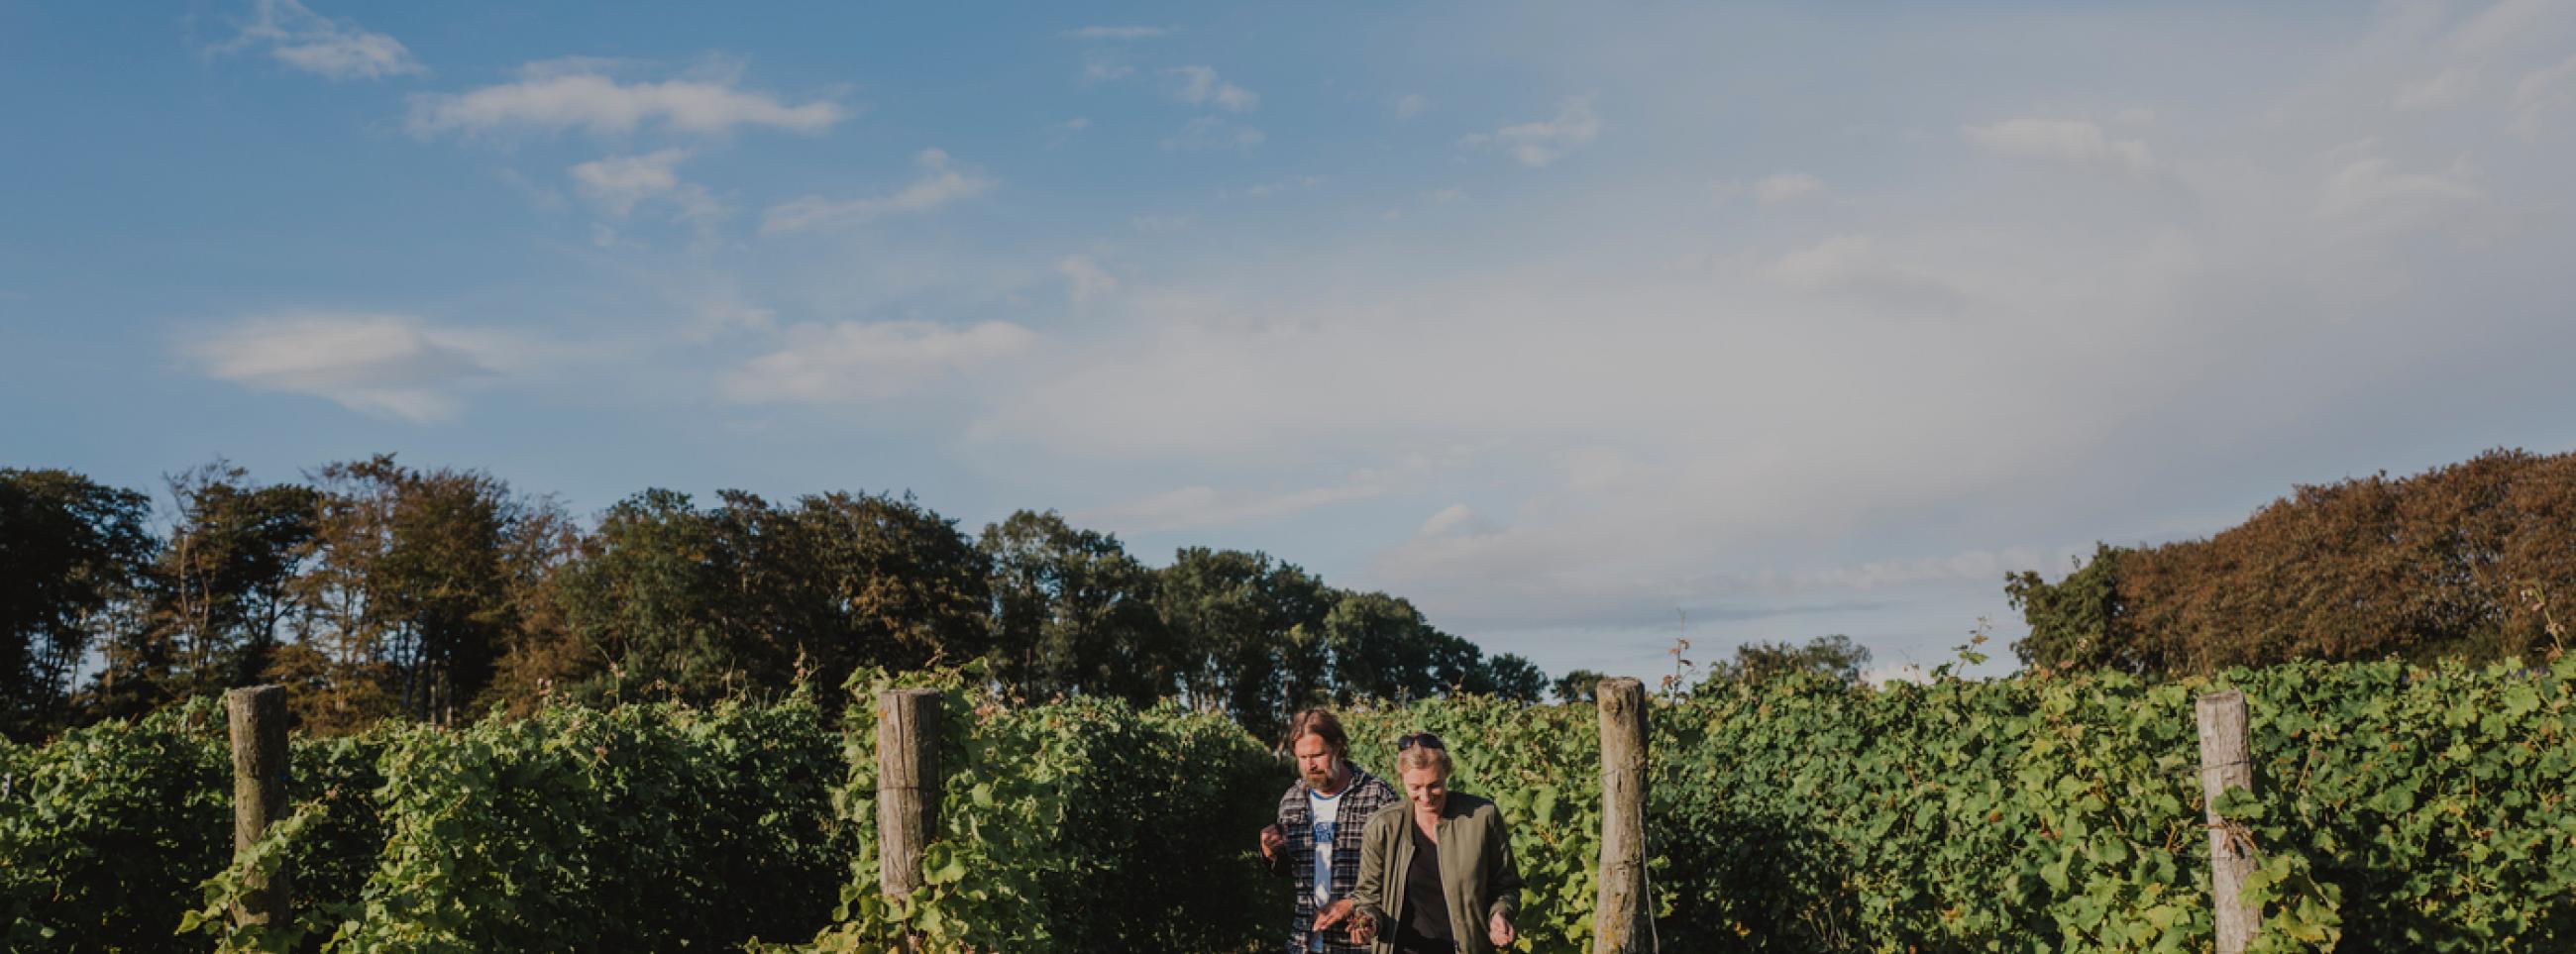 People walking through vines in a vineyard 